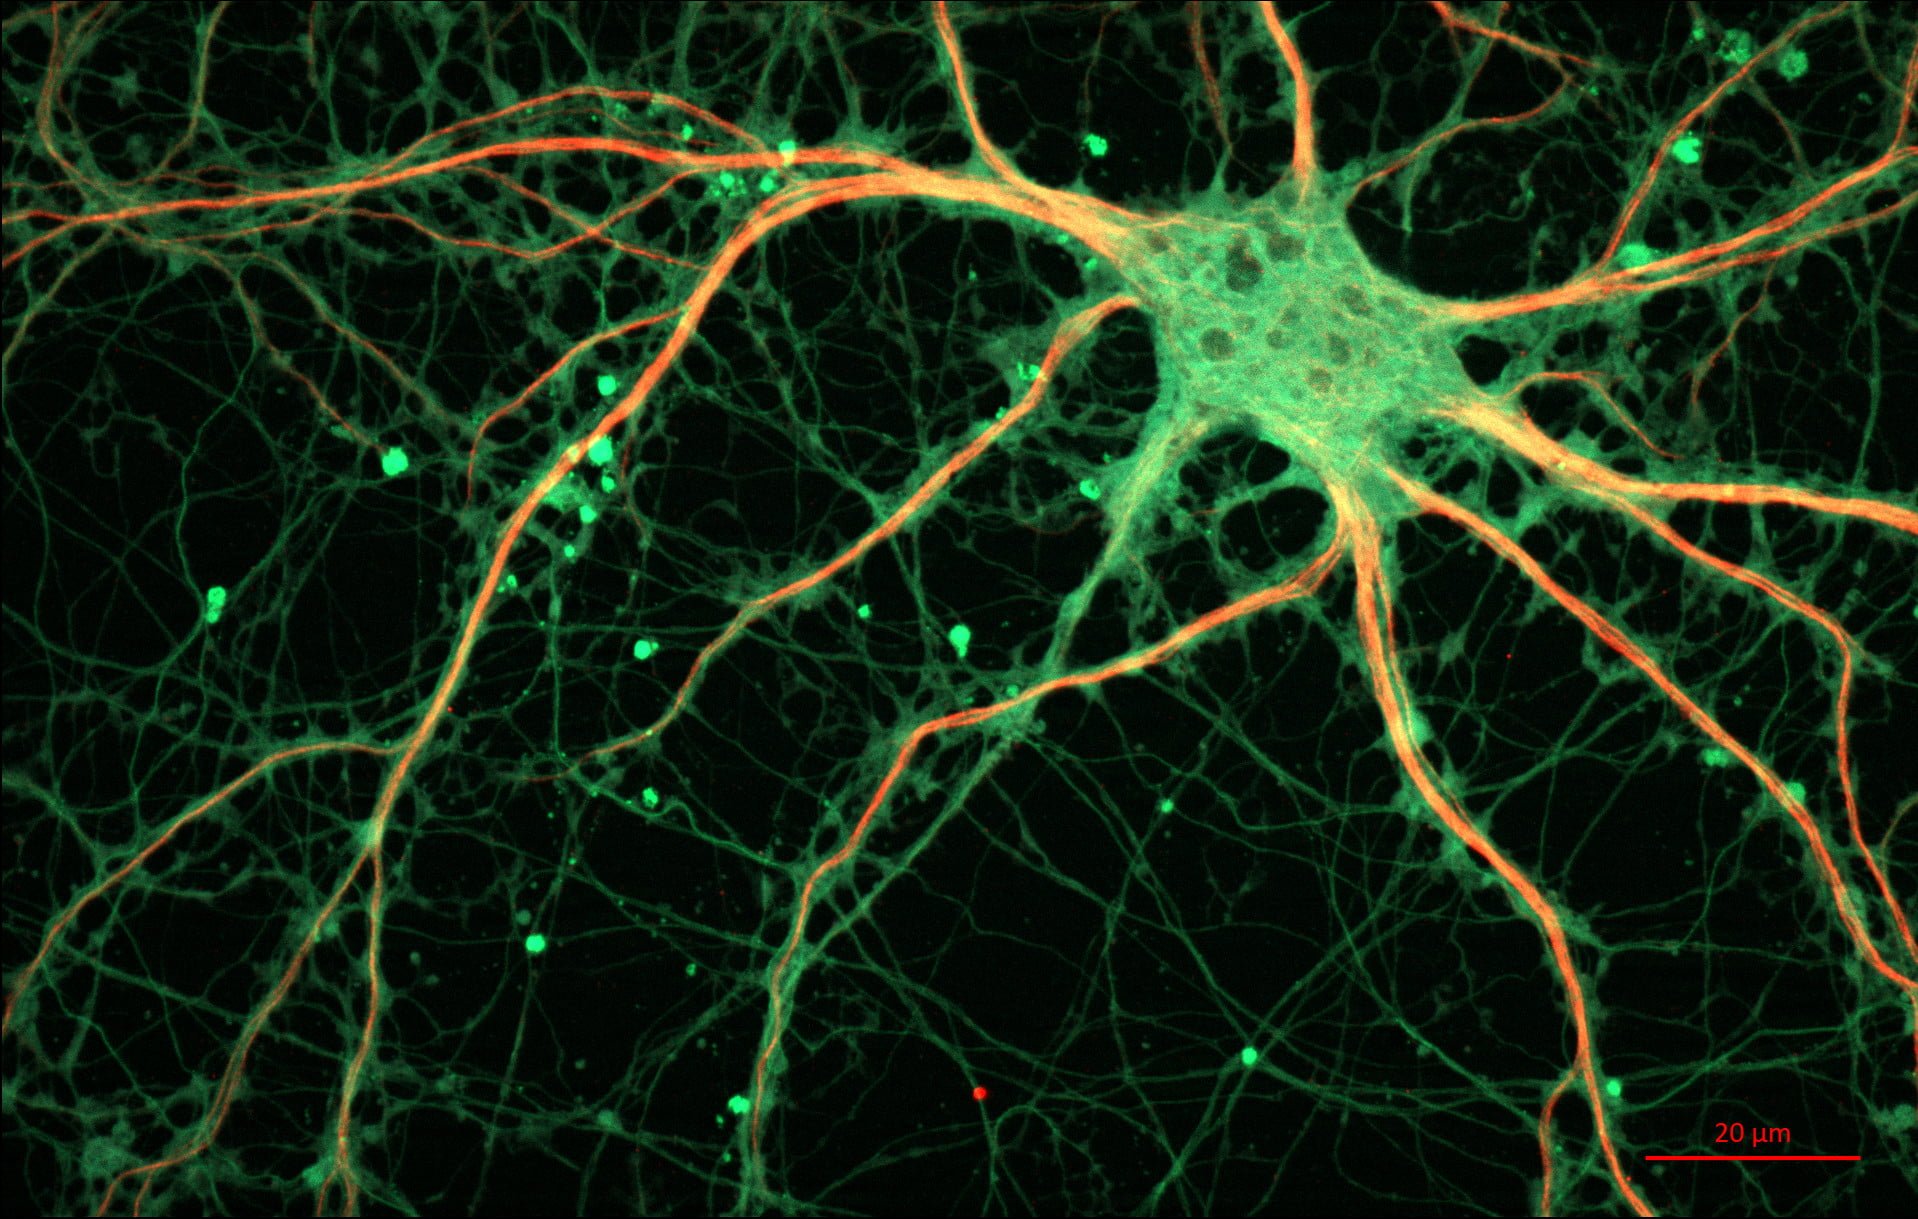 sztuczne sieci neuronowe